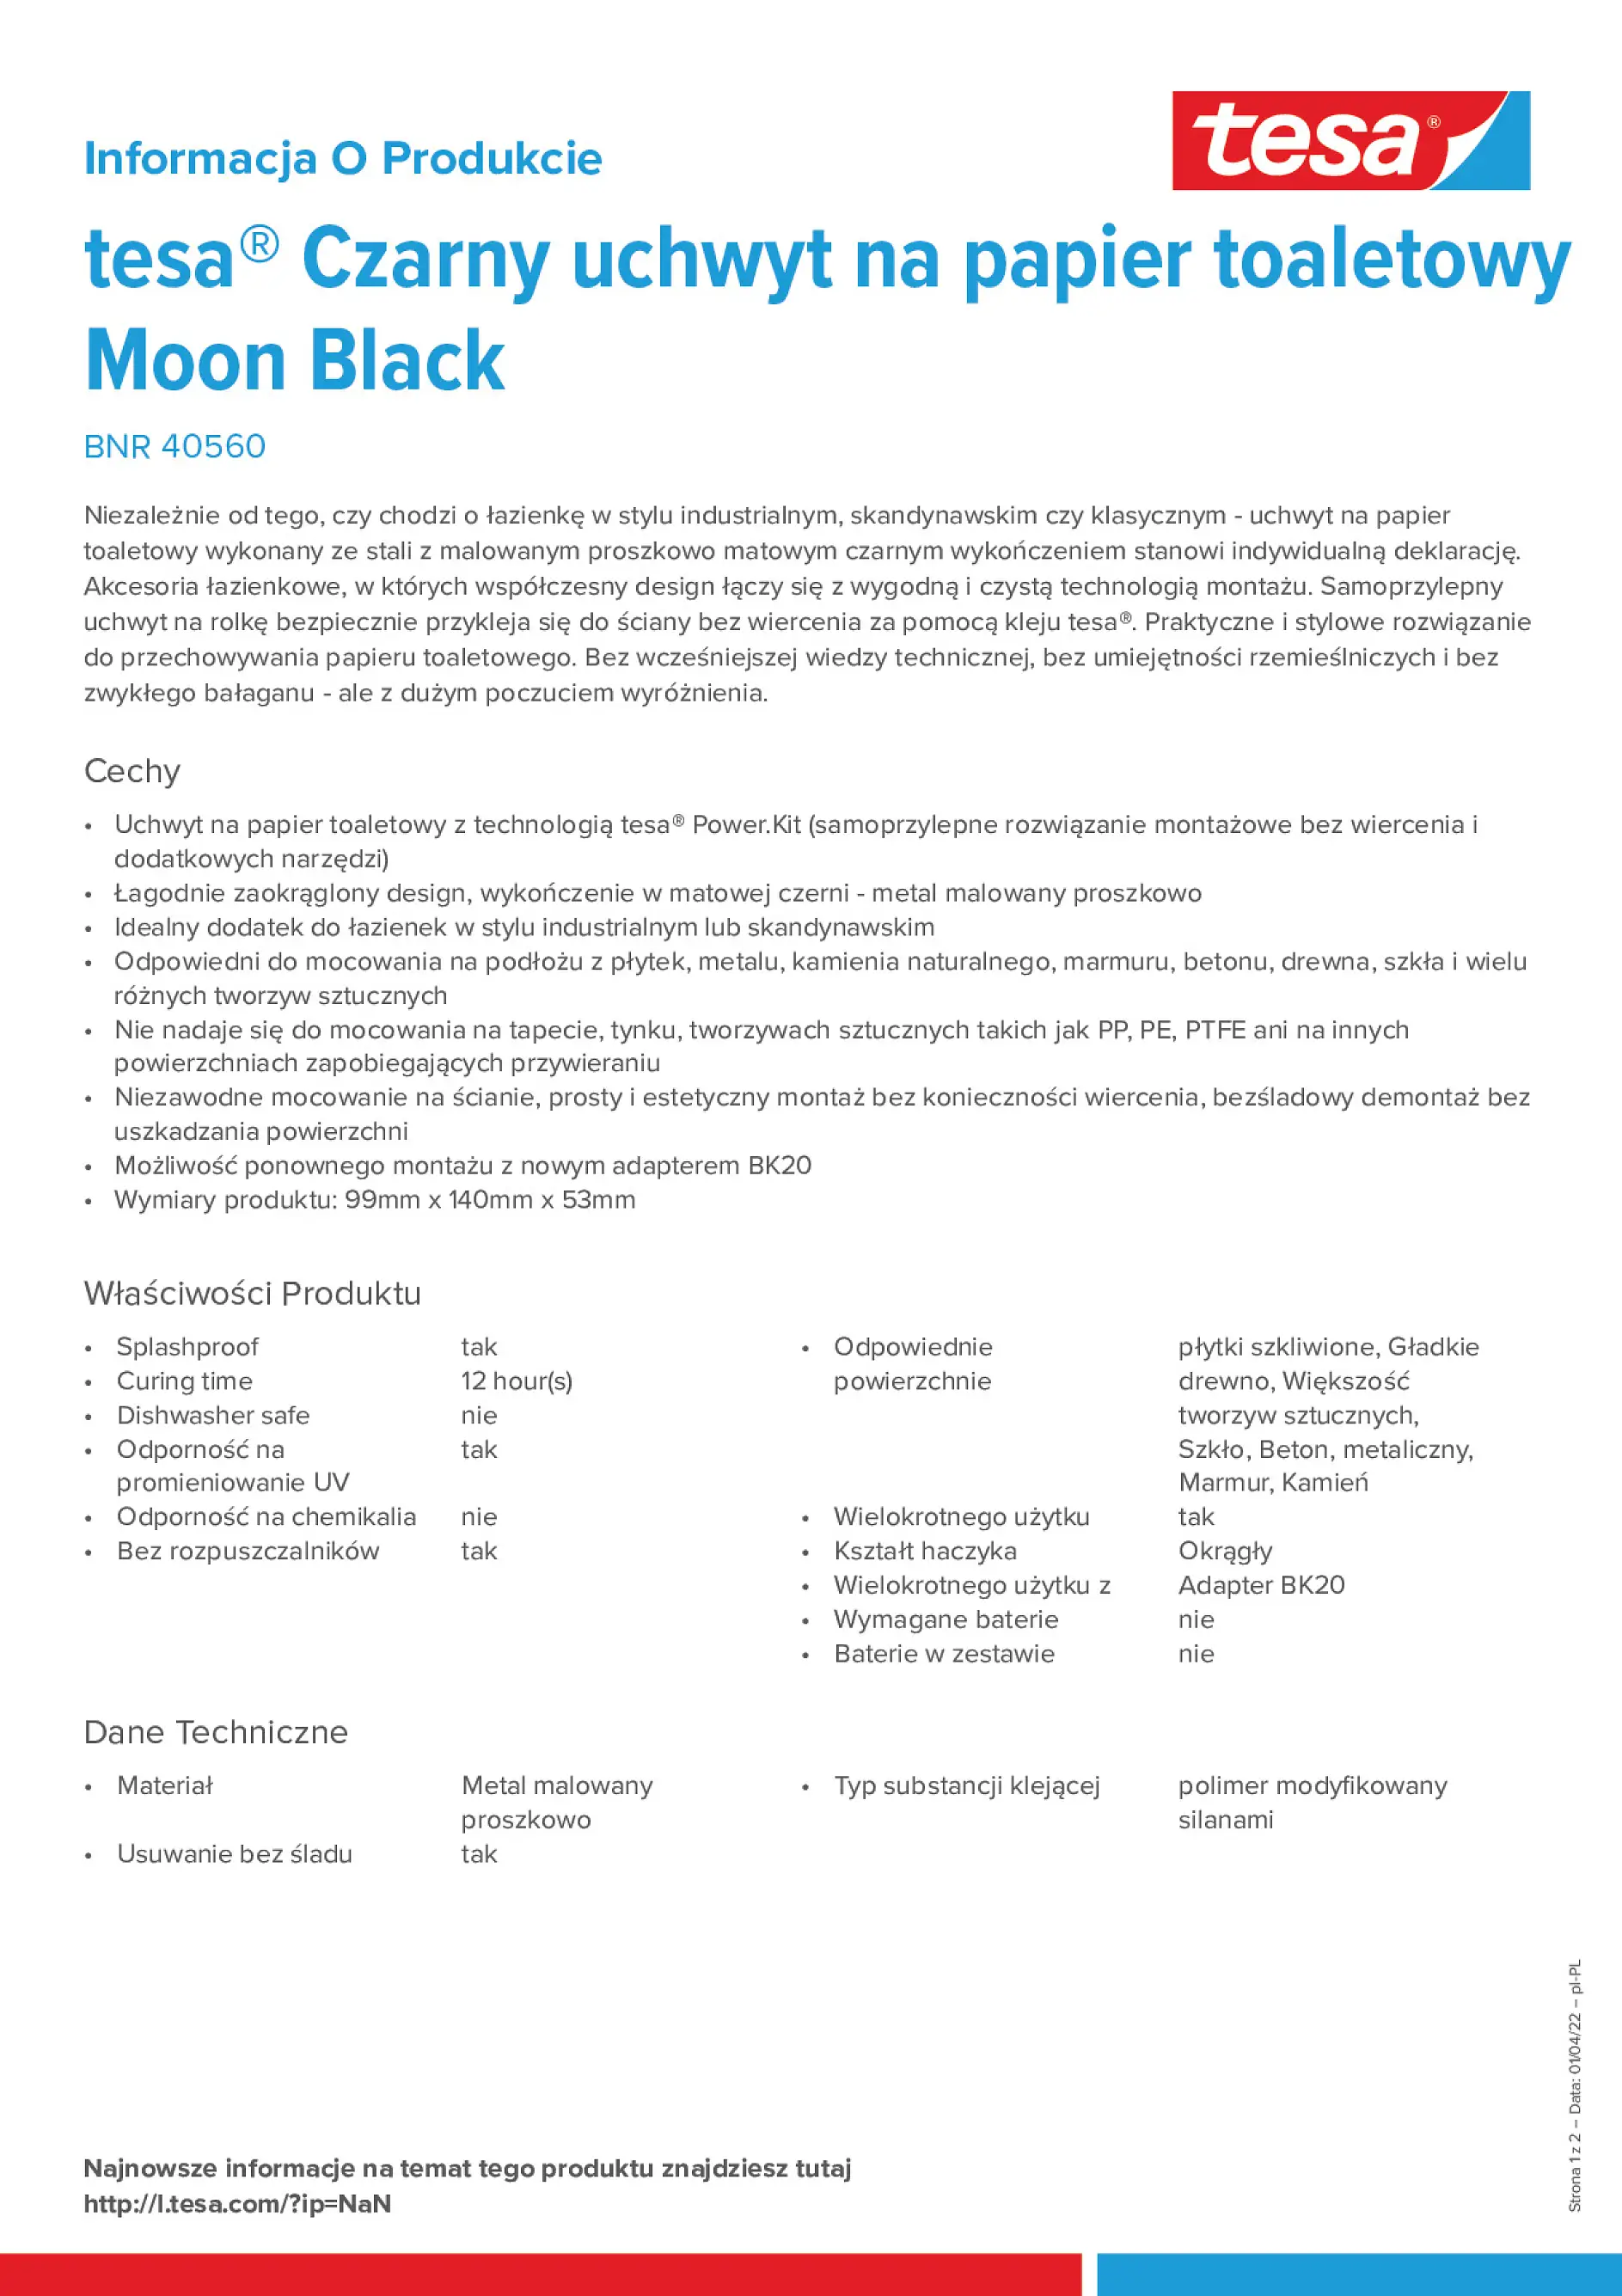 tesa-Moon-Black-Toilet-Roll-Holder-40560_pl-PL